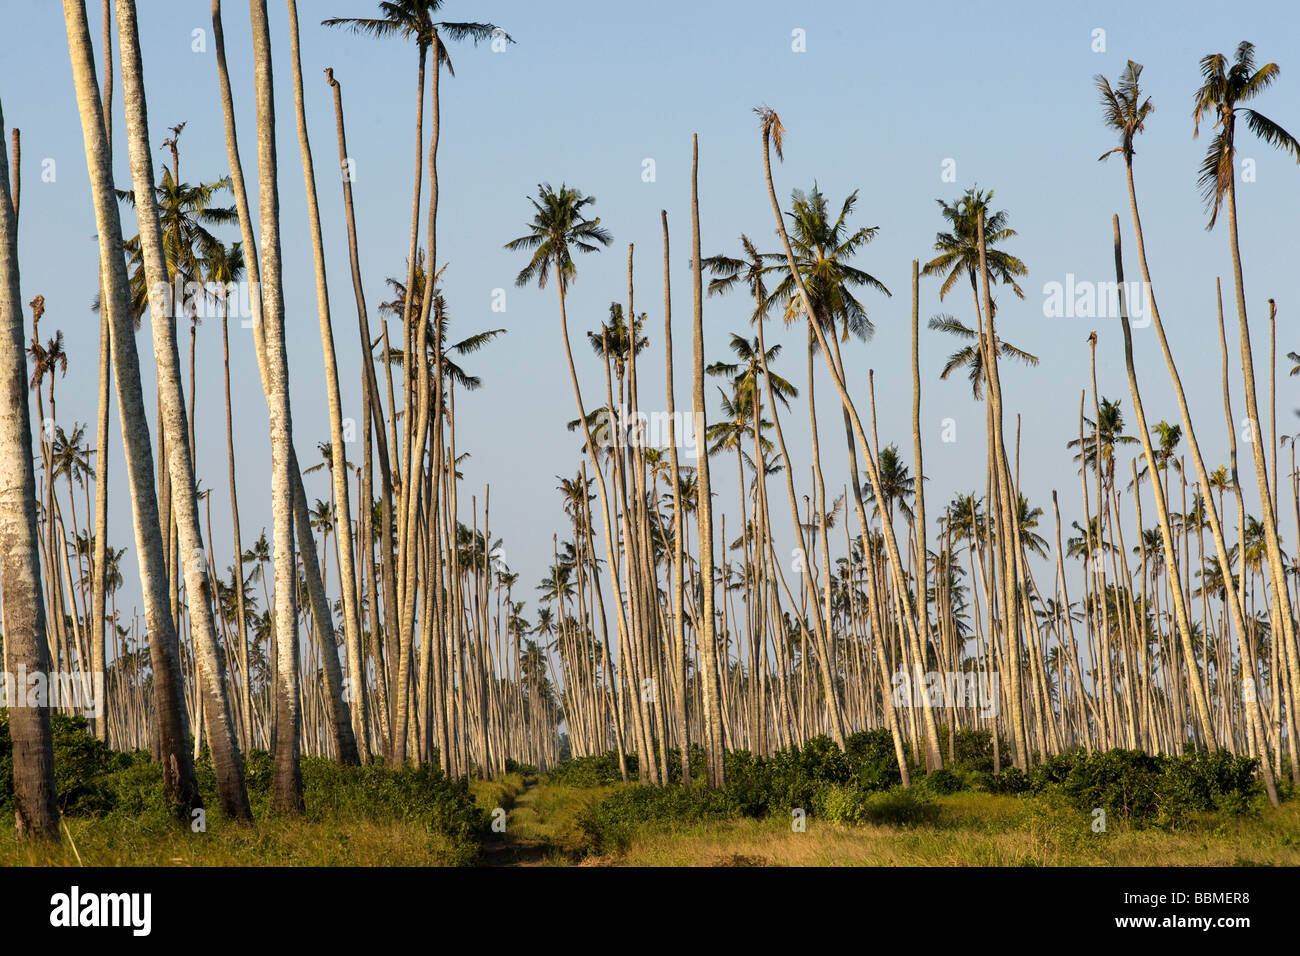 Le cocotier de mourir d'une maladie Quelimane Mozambique Banque D'Images